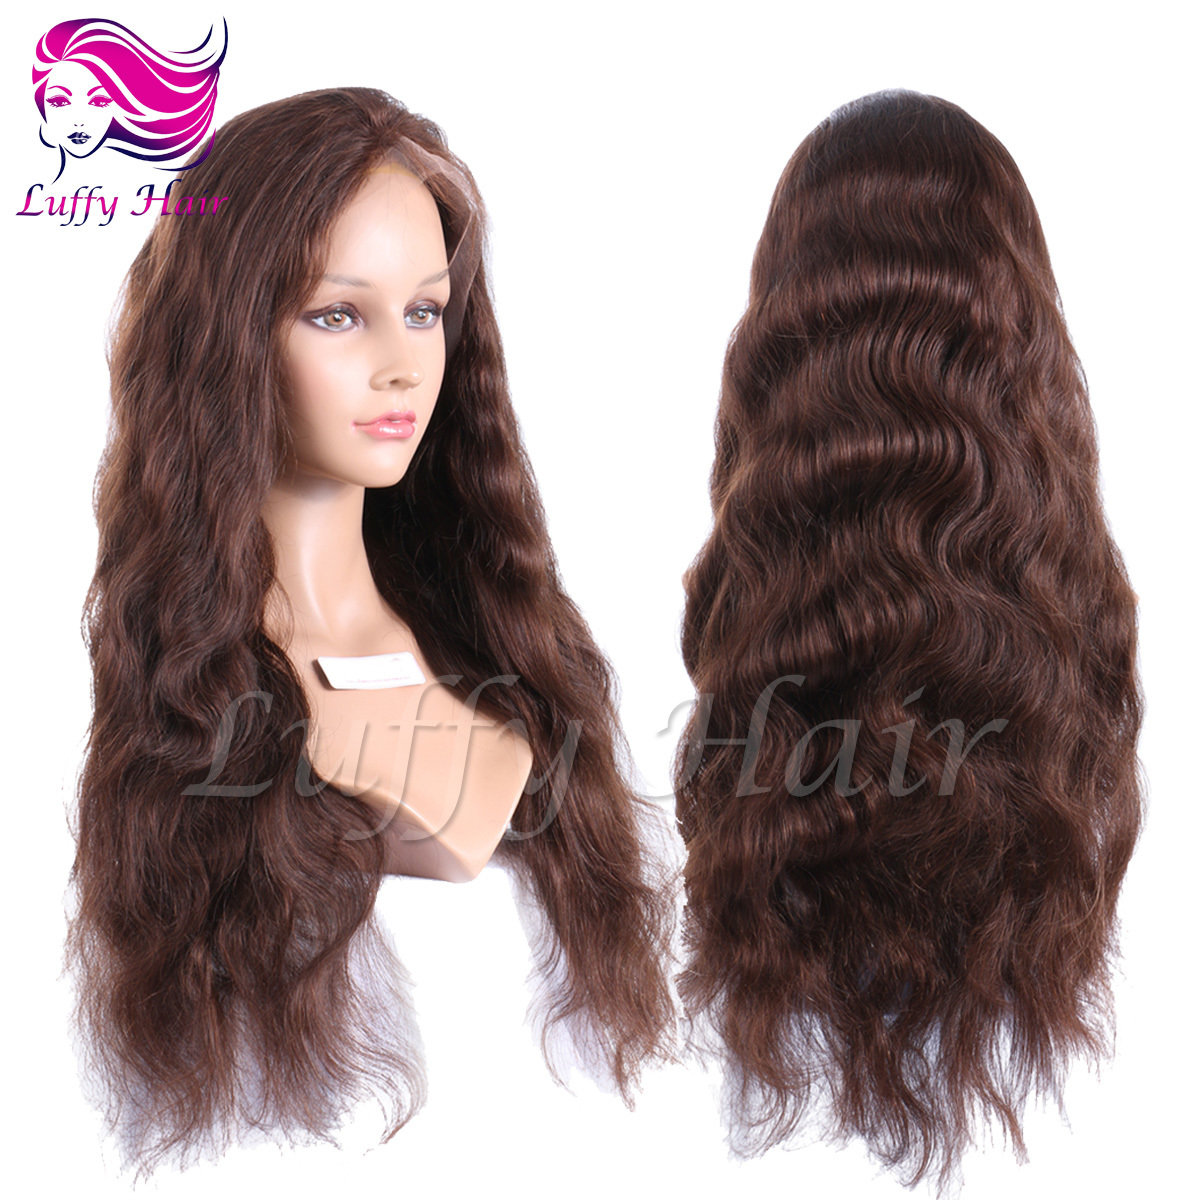 8A Virgin Human Hair Color #4 Natural Wave Wig - KWL060